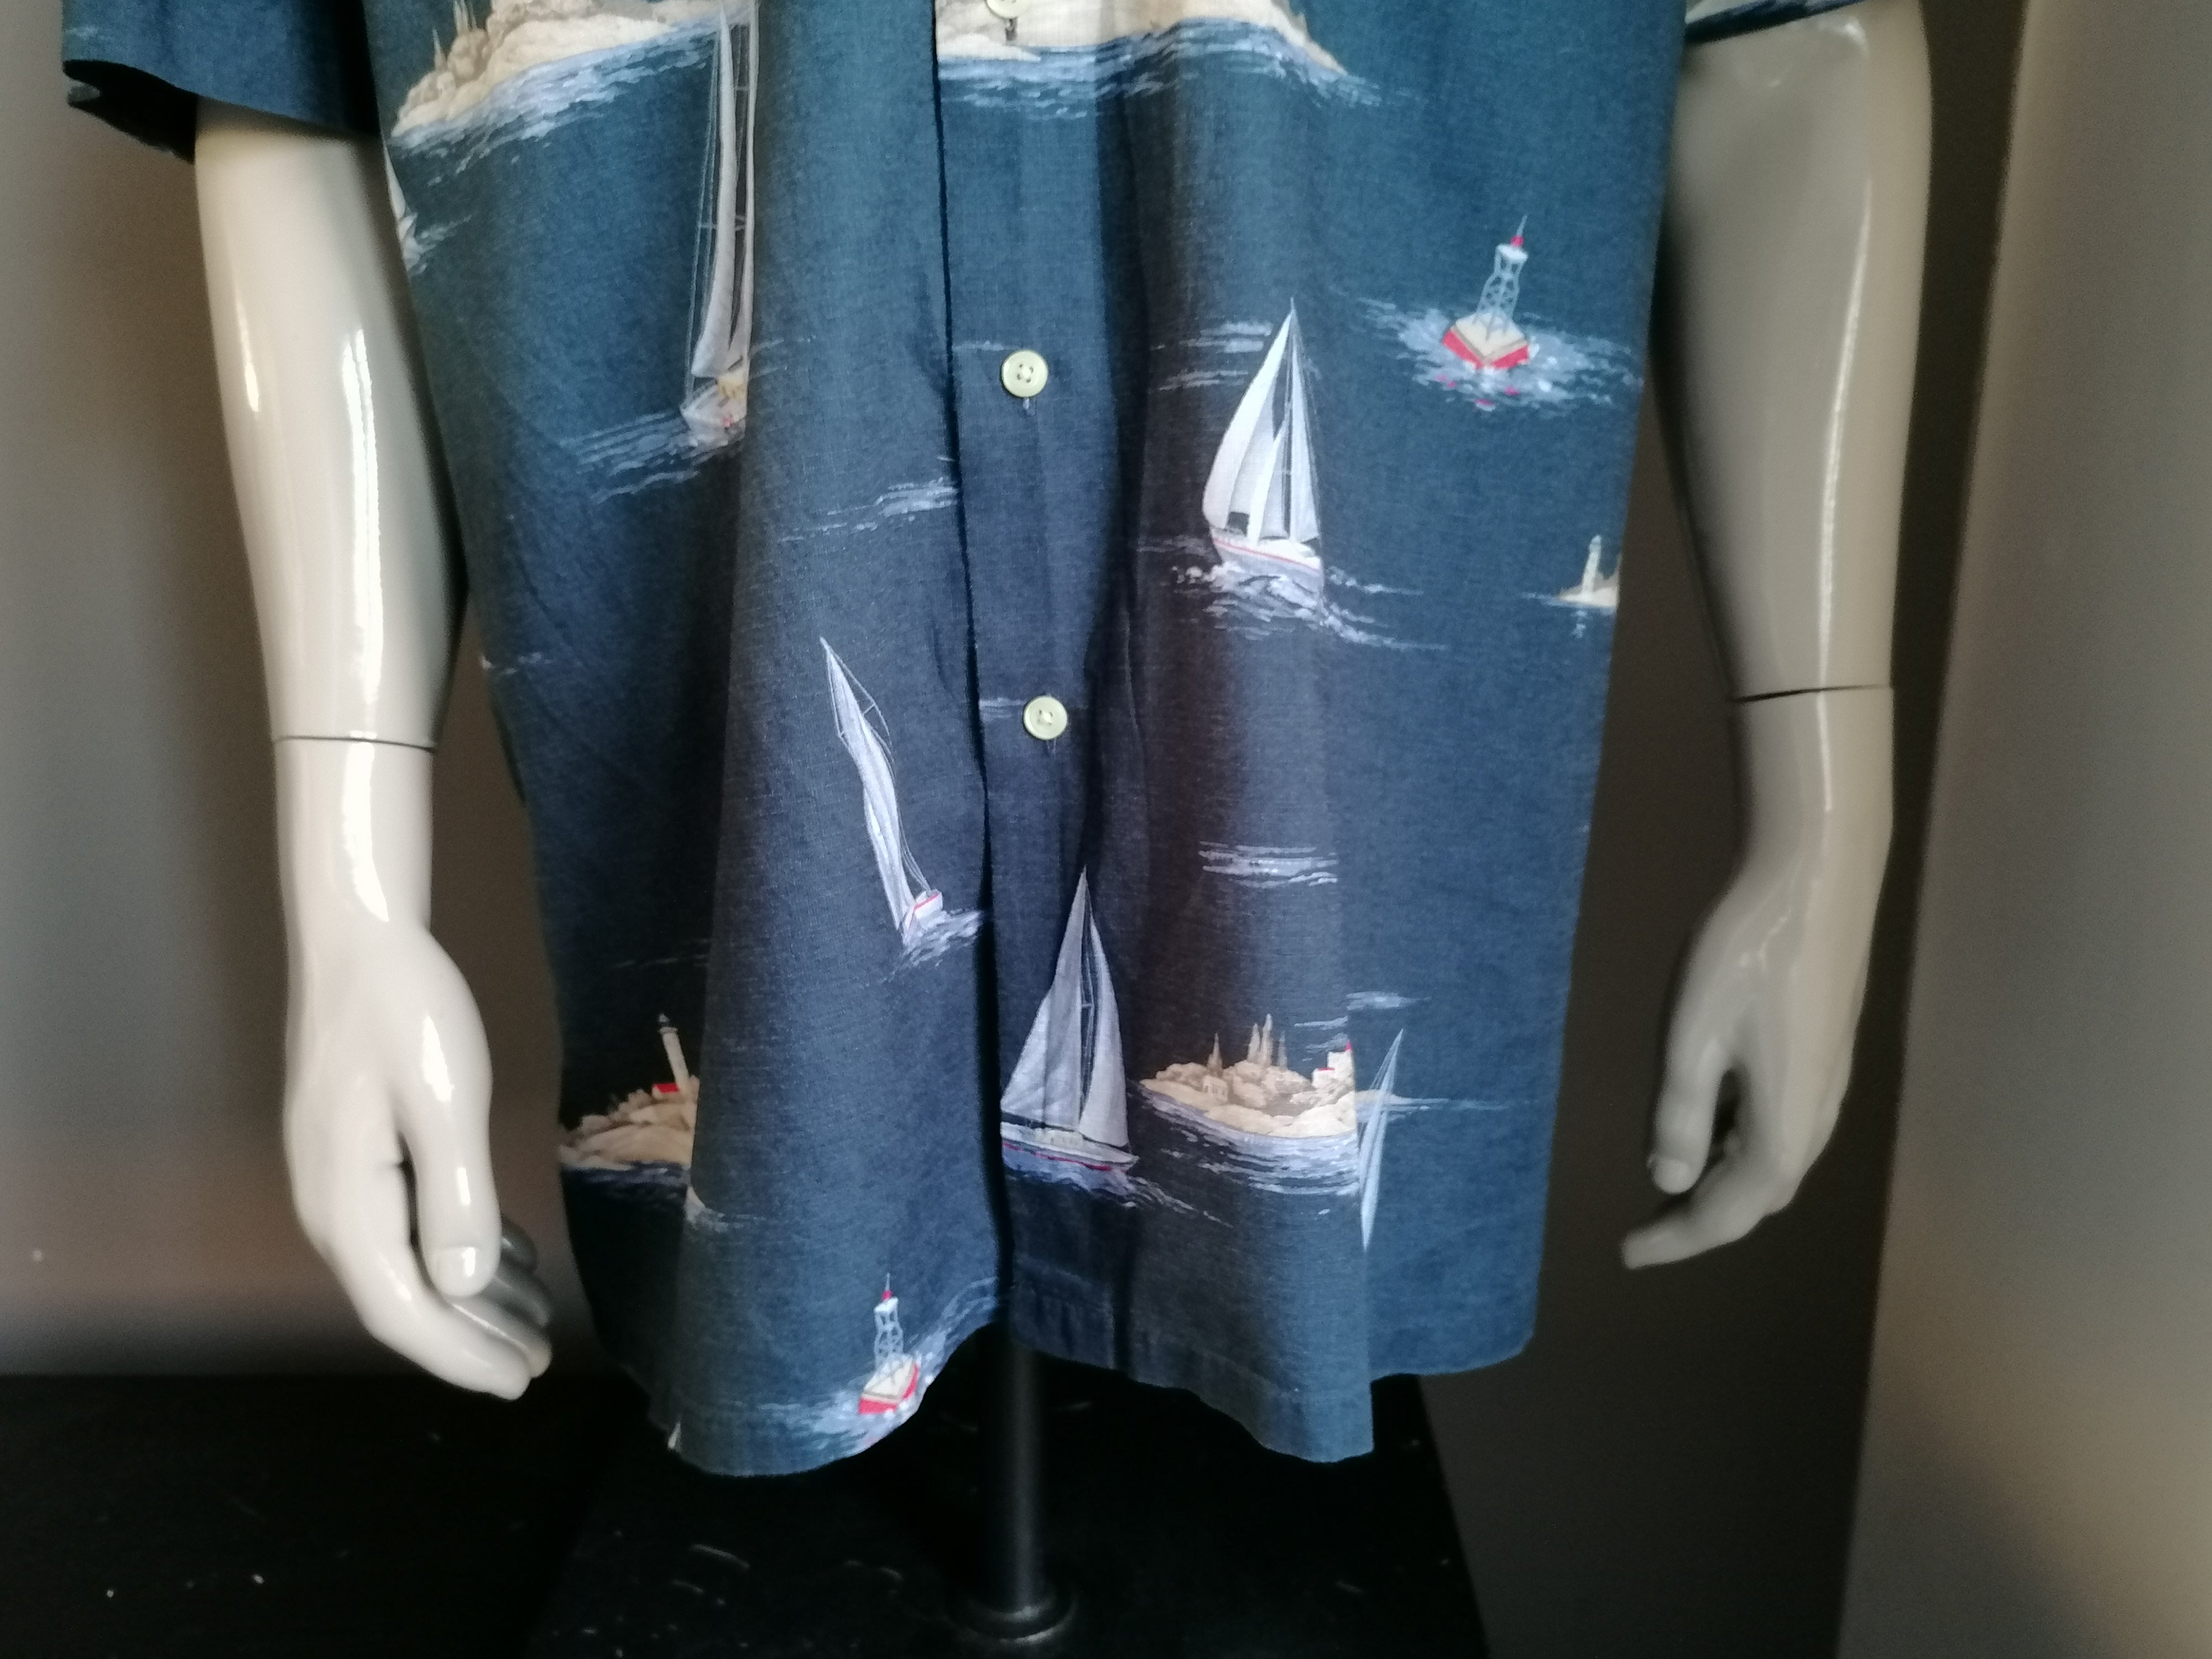 Nautica vintage hawaii overhemd korte mouw. Zeil jacht print. Blauw. Maat XXL / 2XL | EcoGents